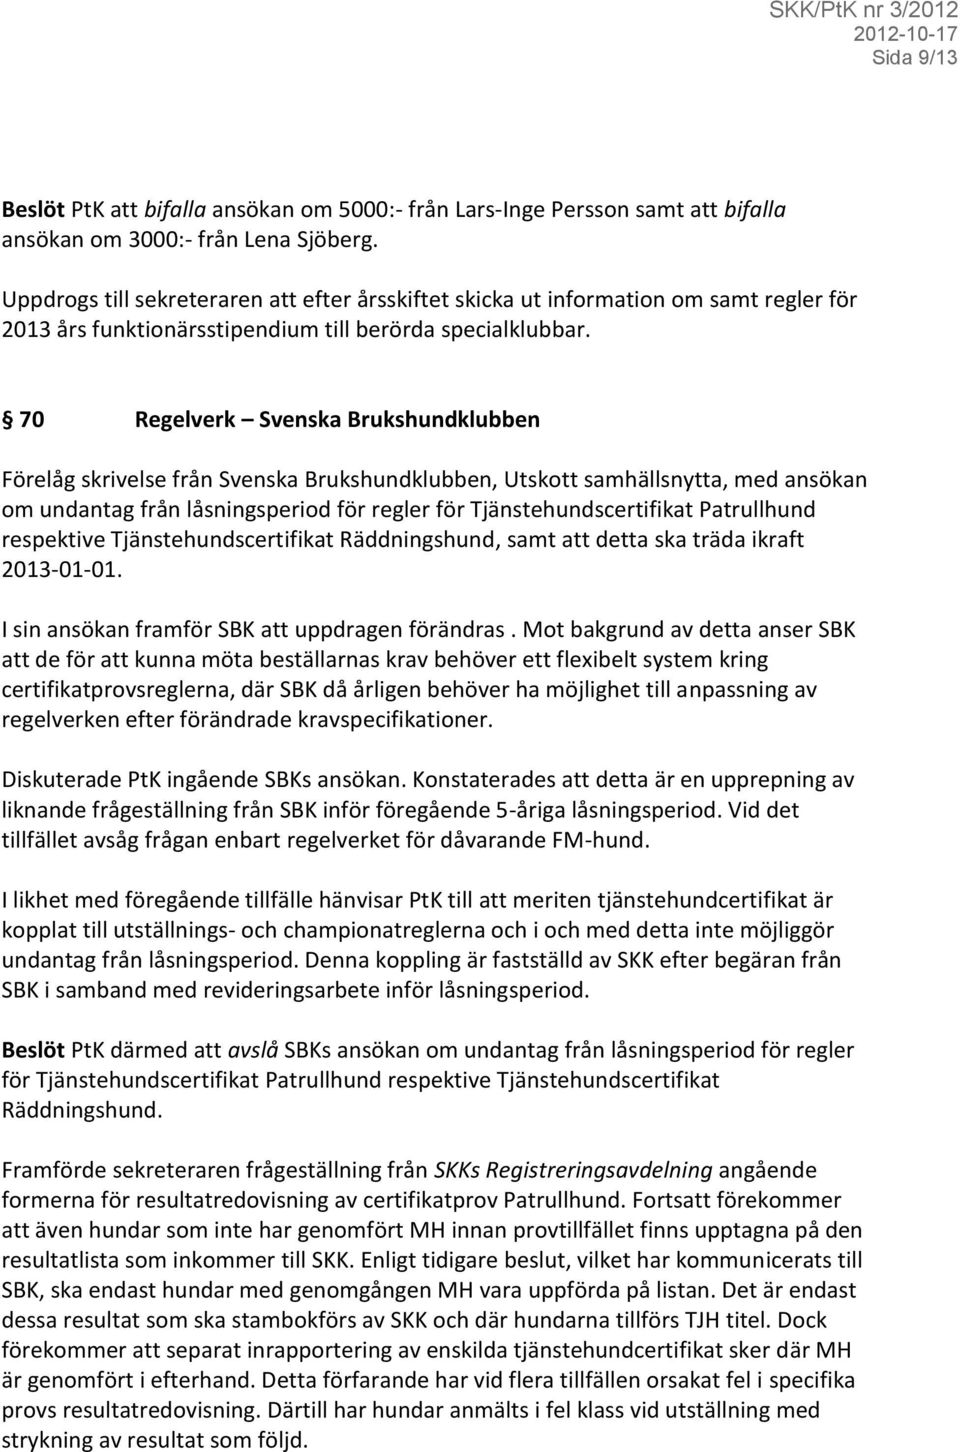 70 Regelverk Svenska Brukshundklubben Förelåg skrivelse från Svenska Brukshundklubben, Utskott samhällsnytta, med ansökan om undantag från låsningsperiod för regler för Tjänstehundscertifikat